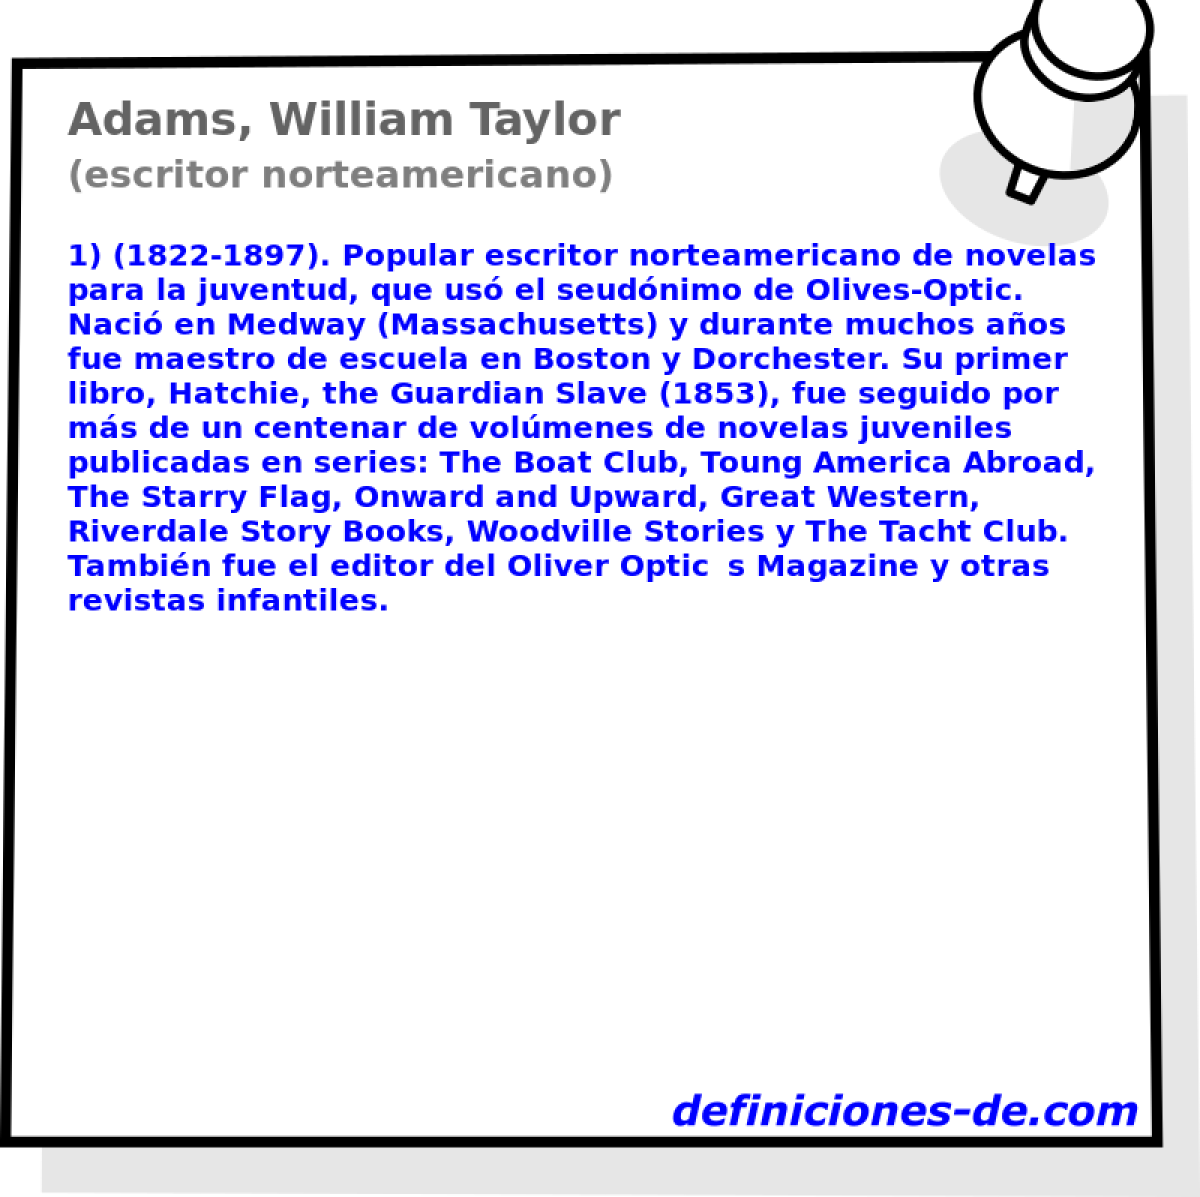 Adams, William Taylor (escritor norteamericano)